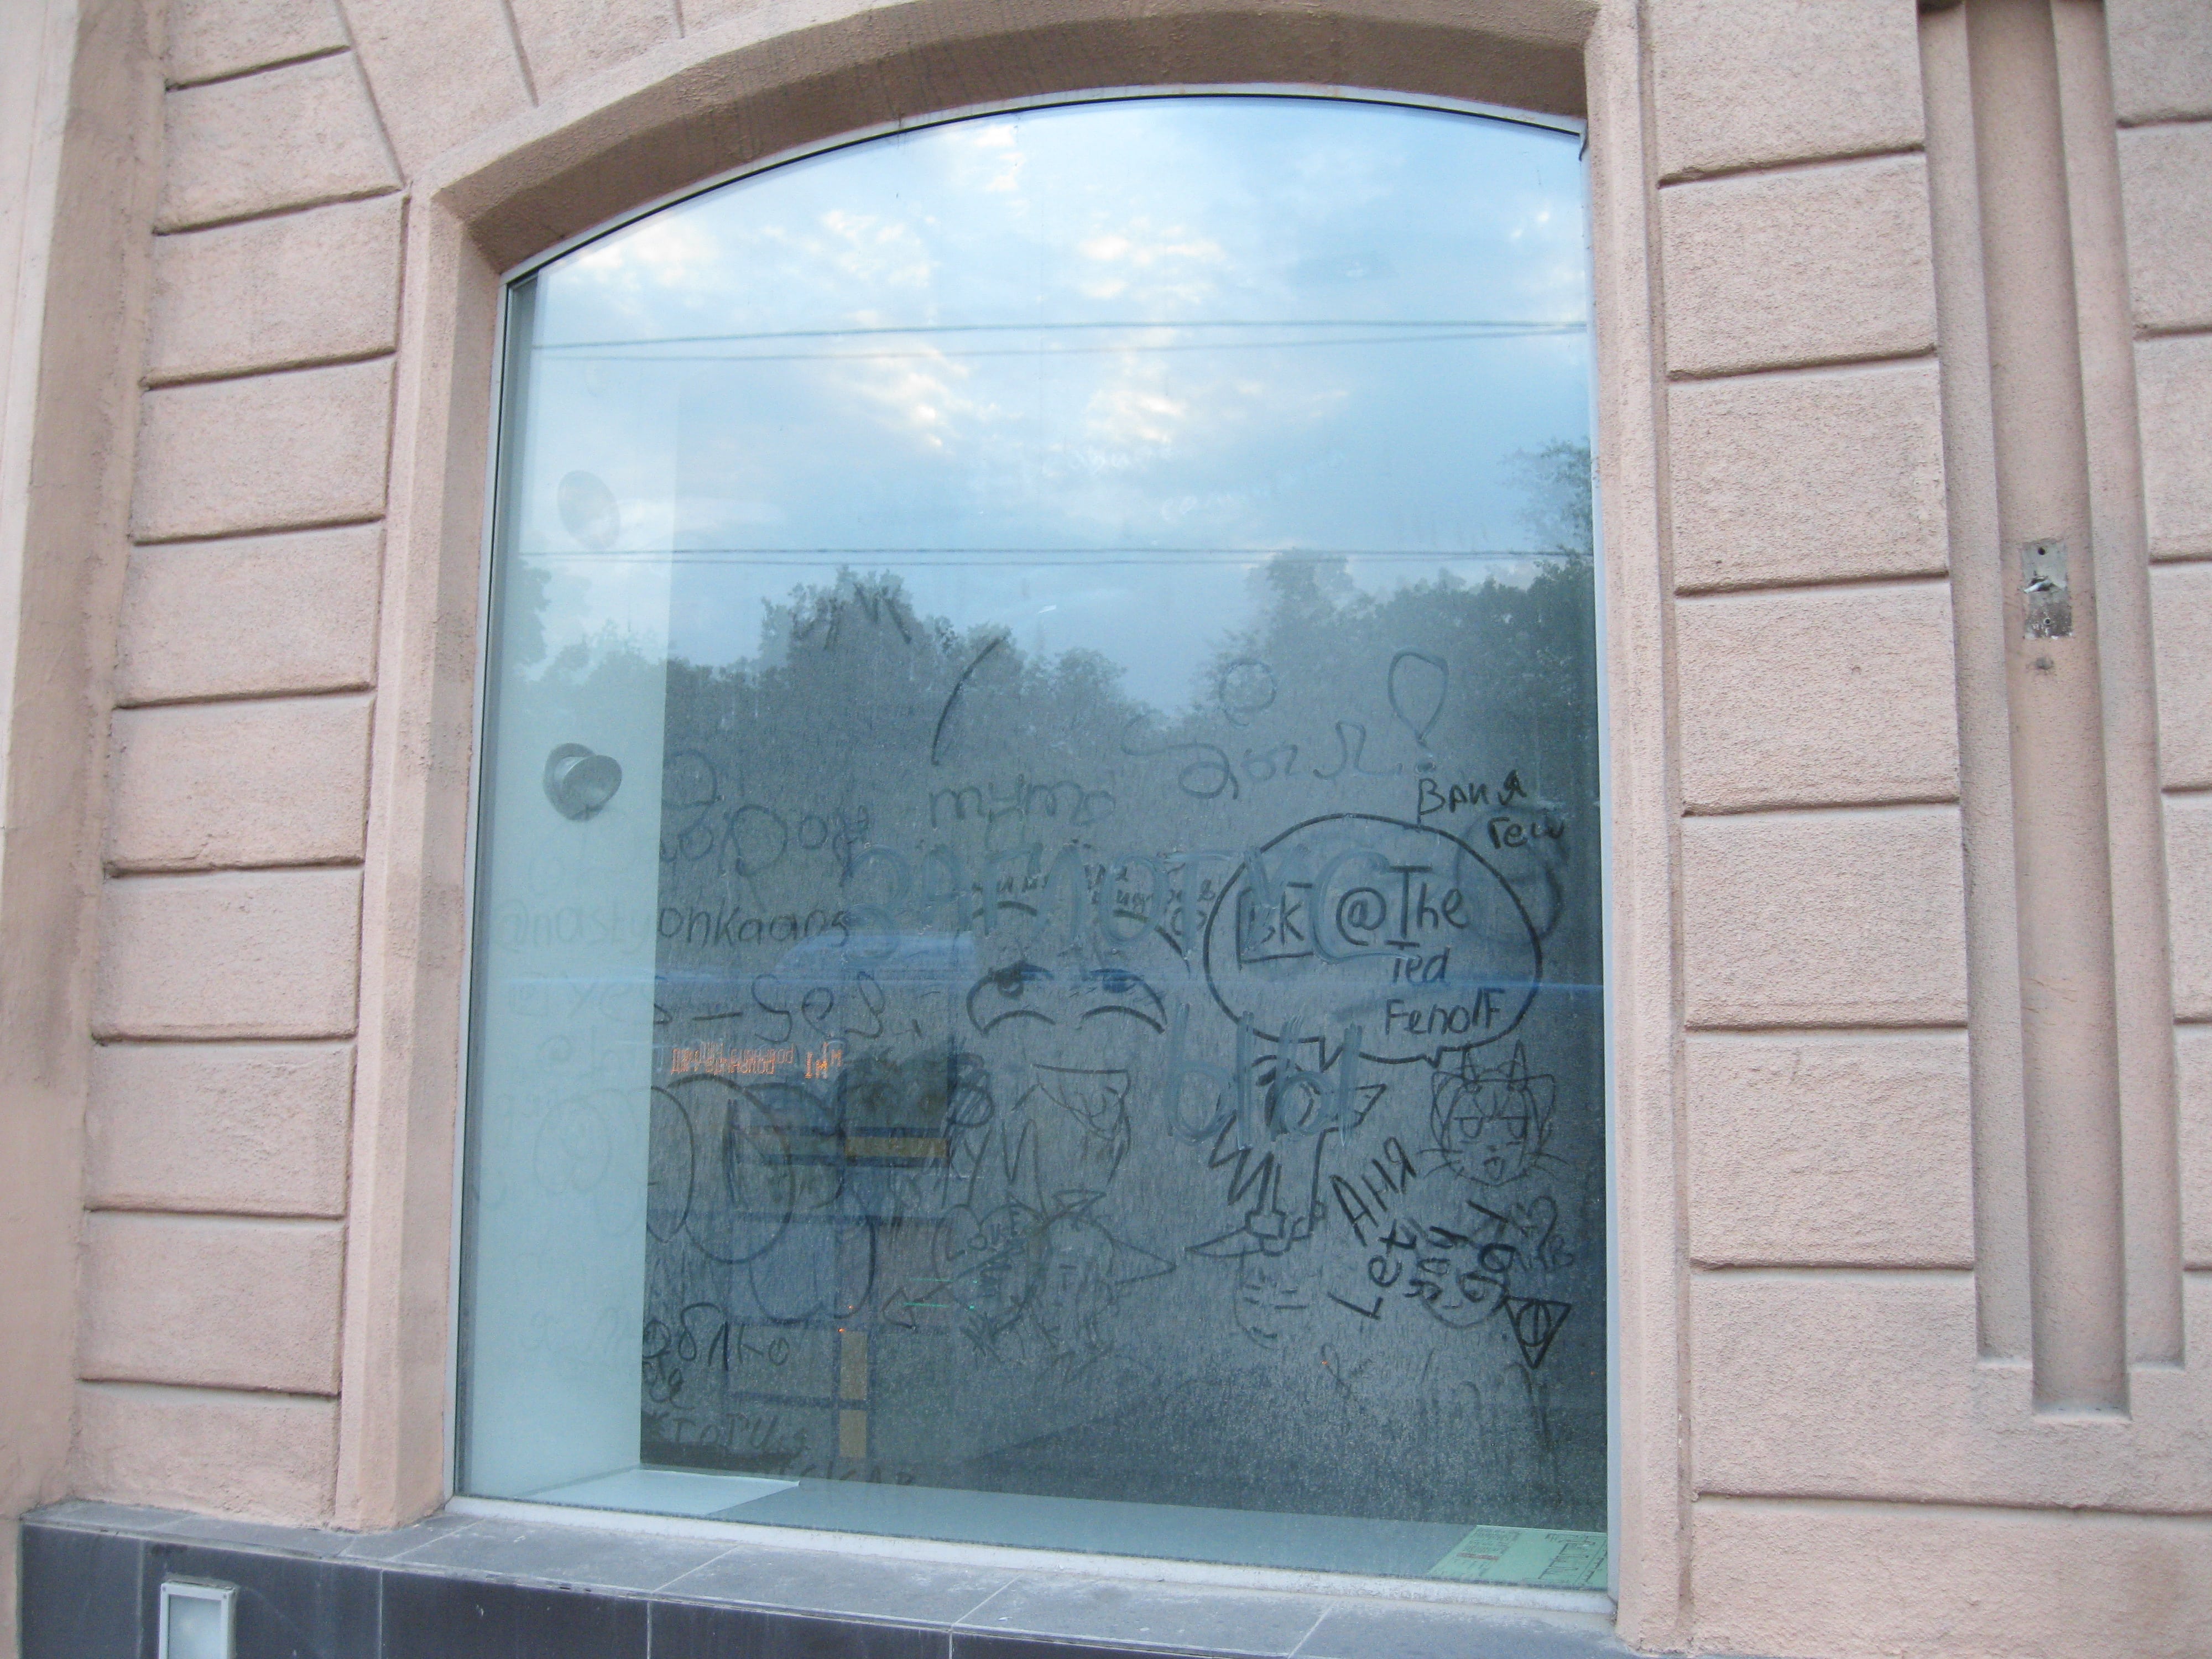 Граффити на пыльных витринах в центре Москвы - Ленинский проспект